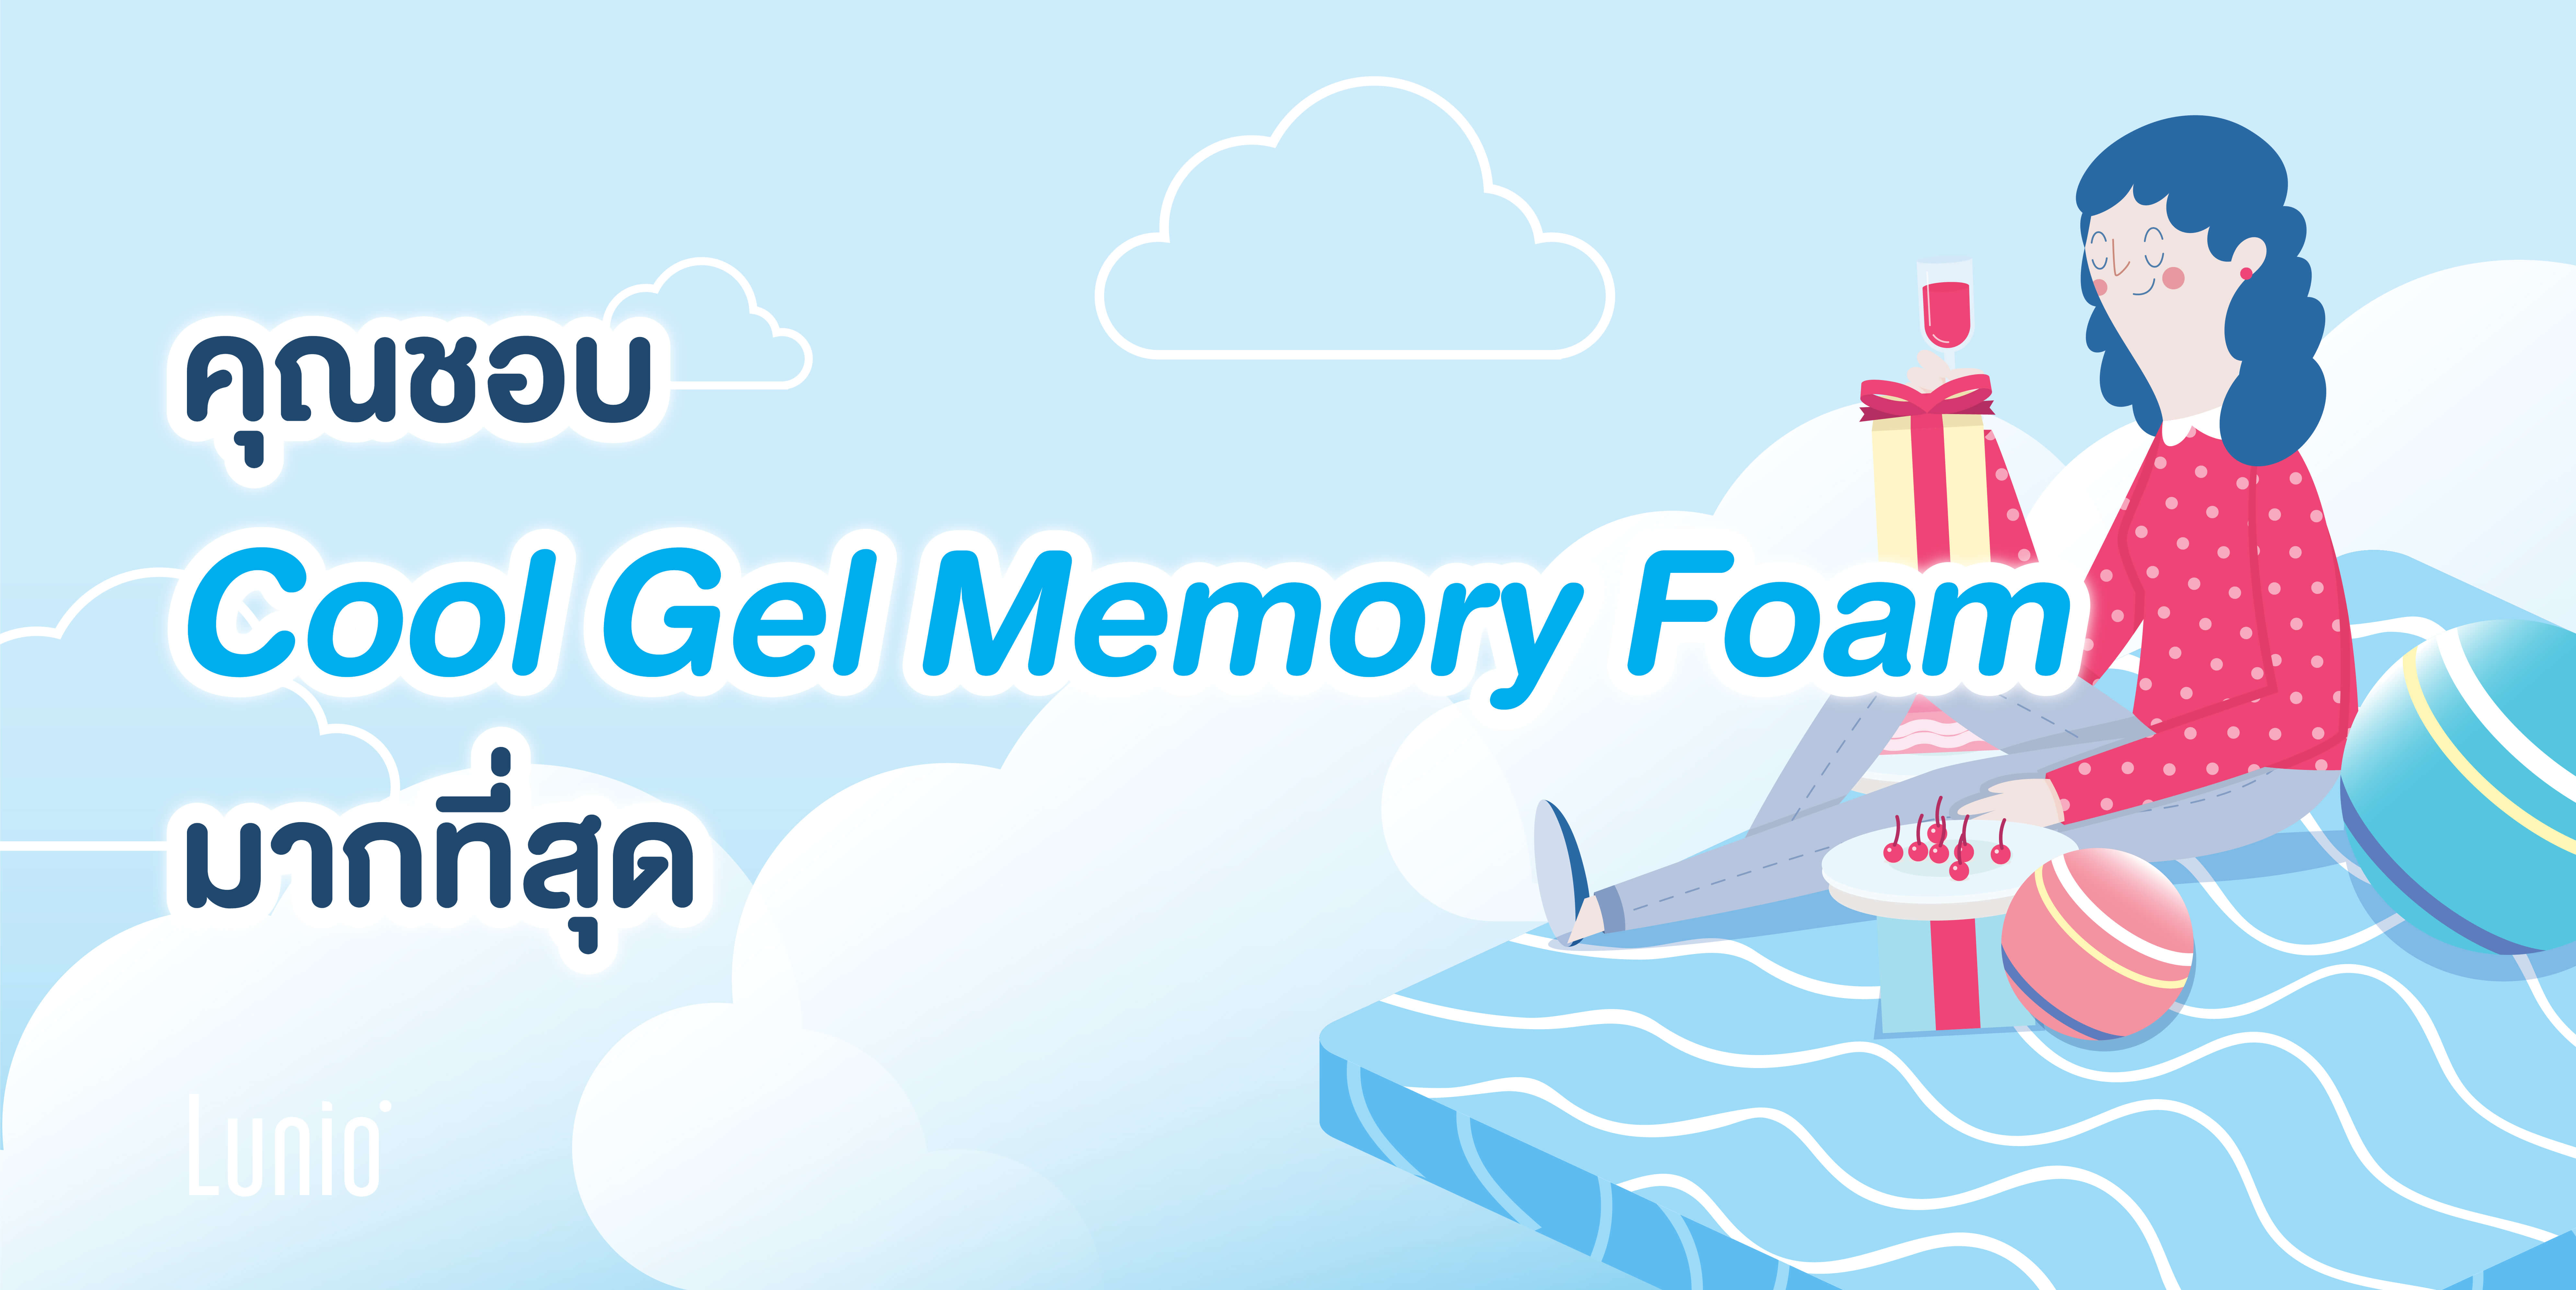 ทายนิสัย : คุณชอบ Cool Gel Memory Foam มากที่สุด